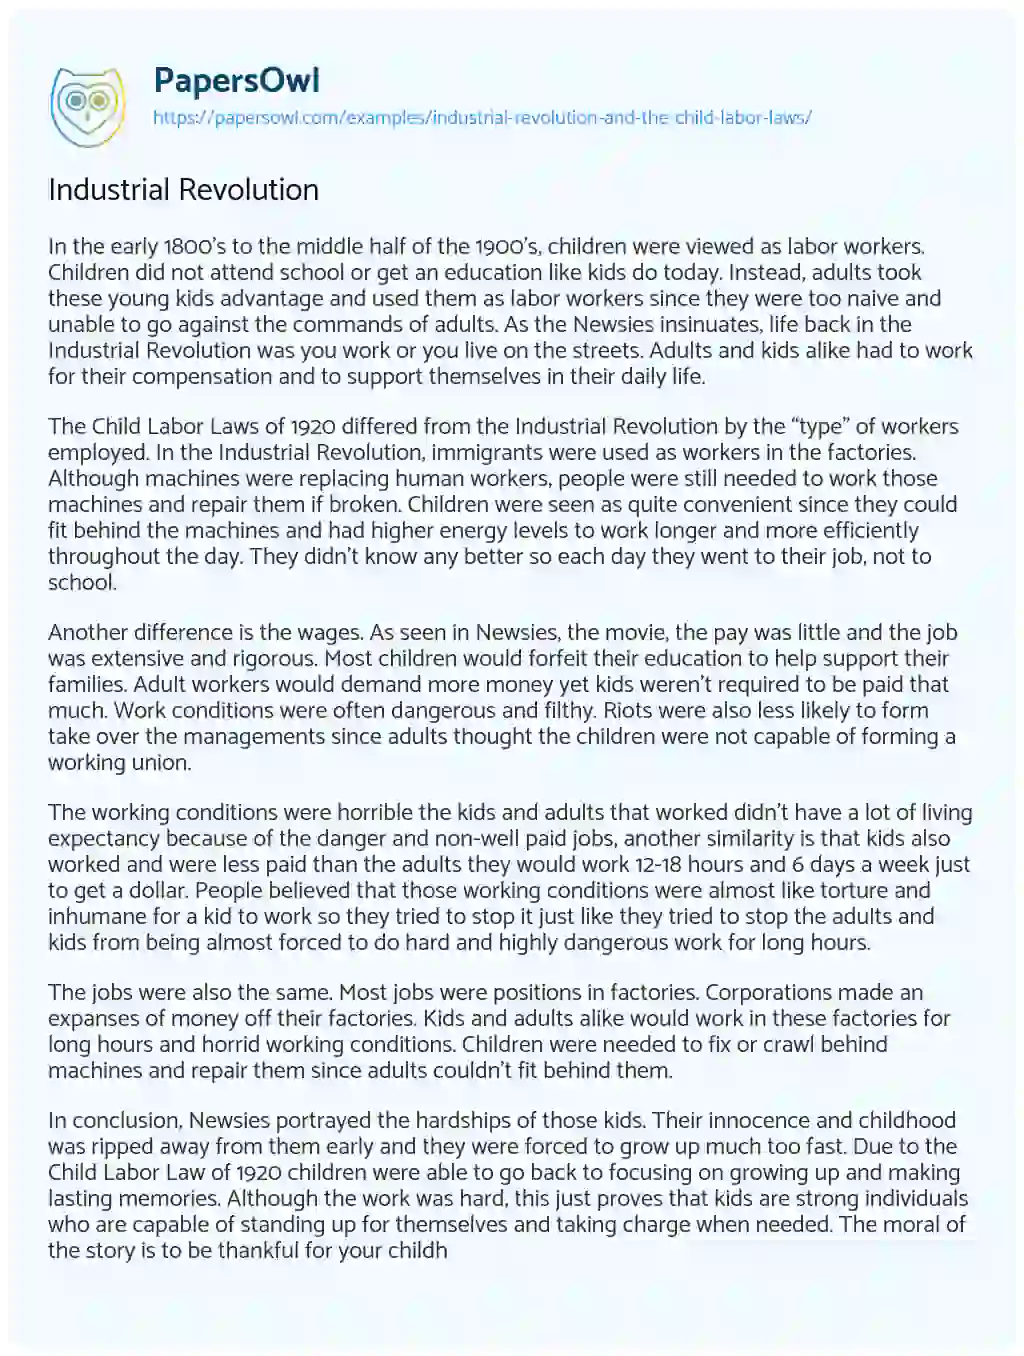 Industrial Revolution essay